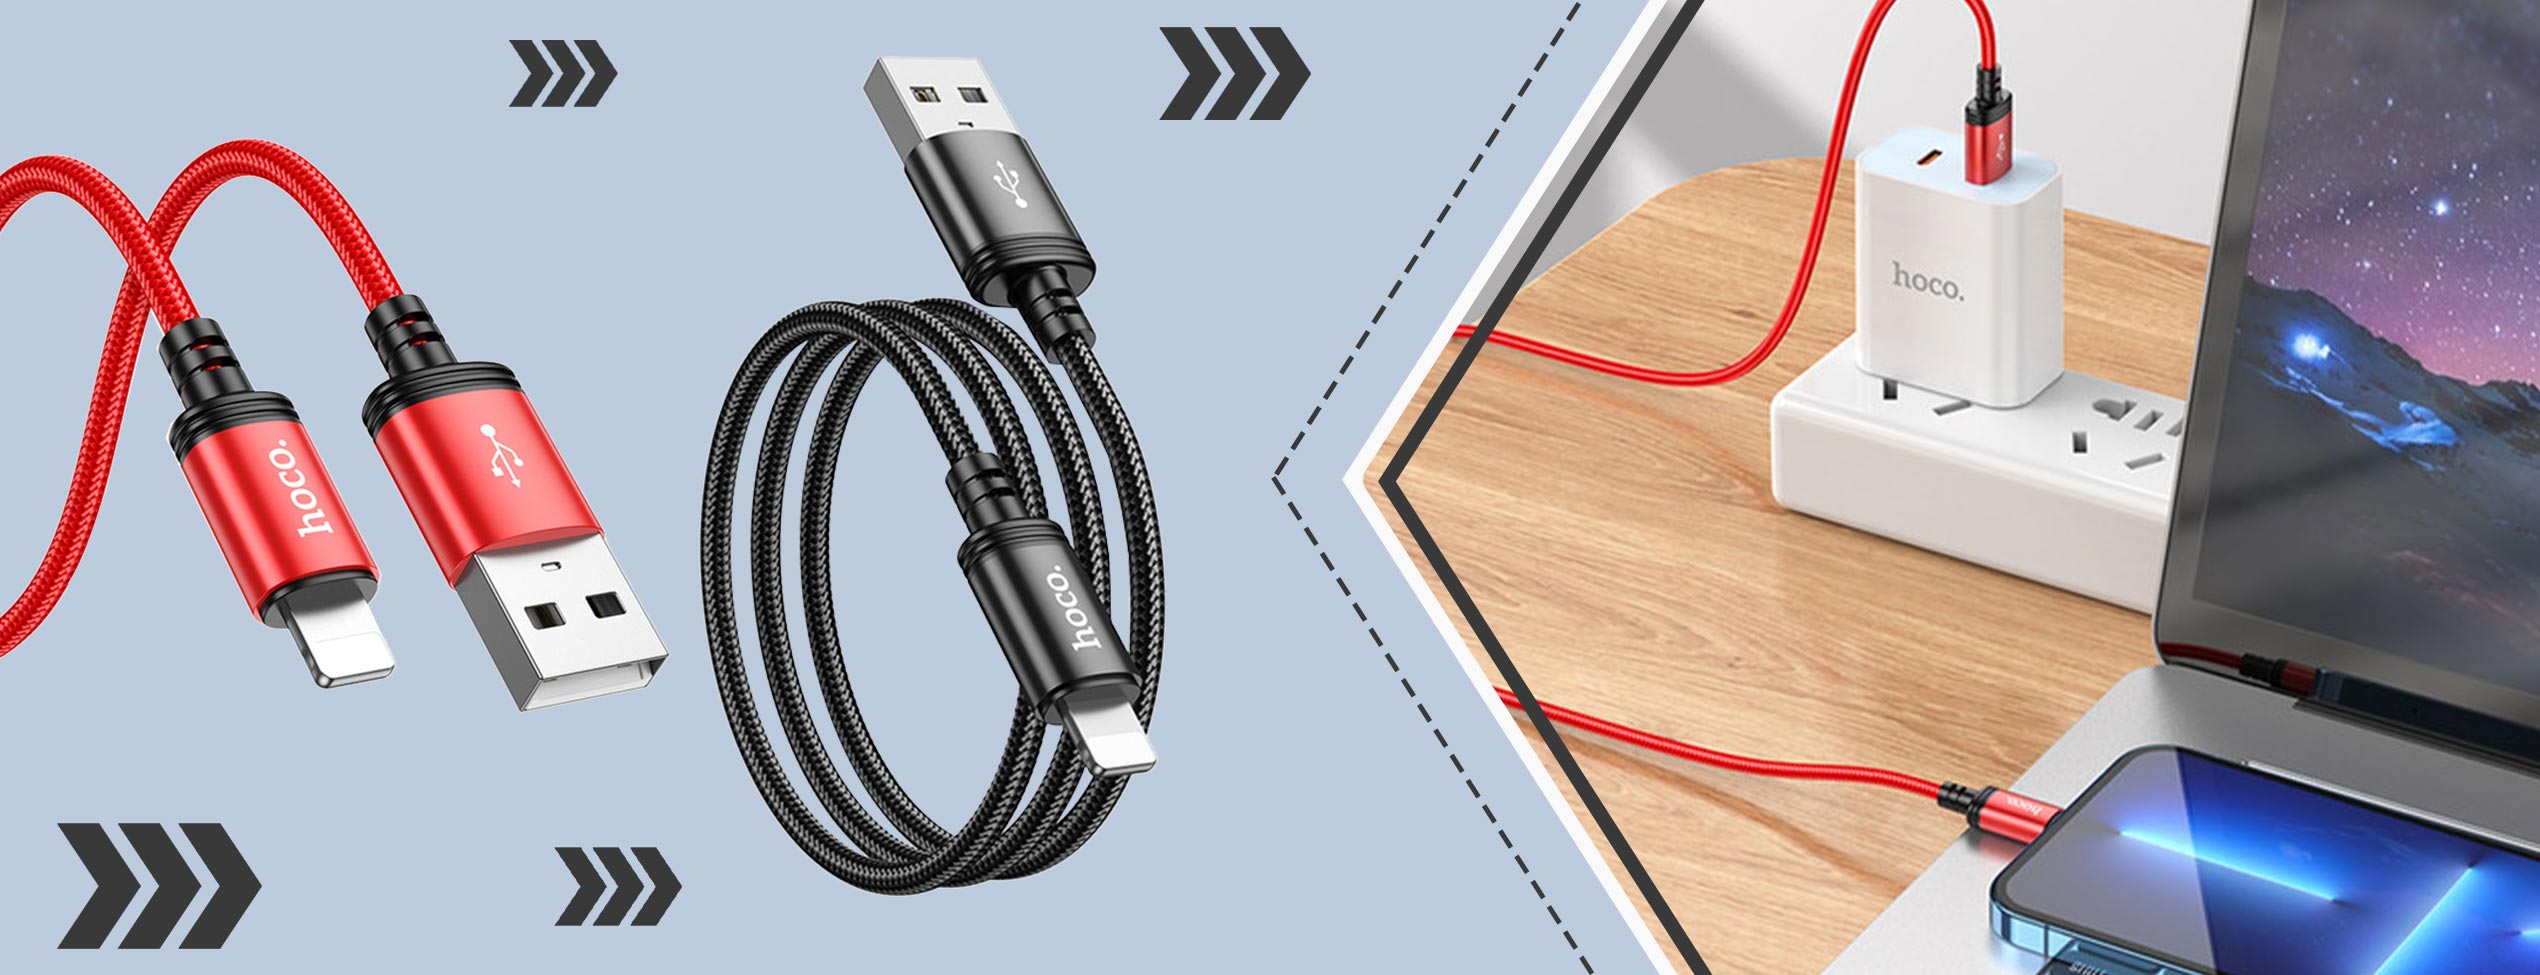 کابل تبدیل Lightning به USB هوکو X89